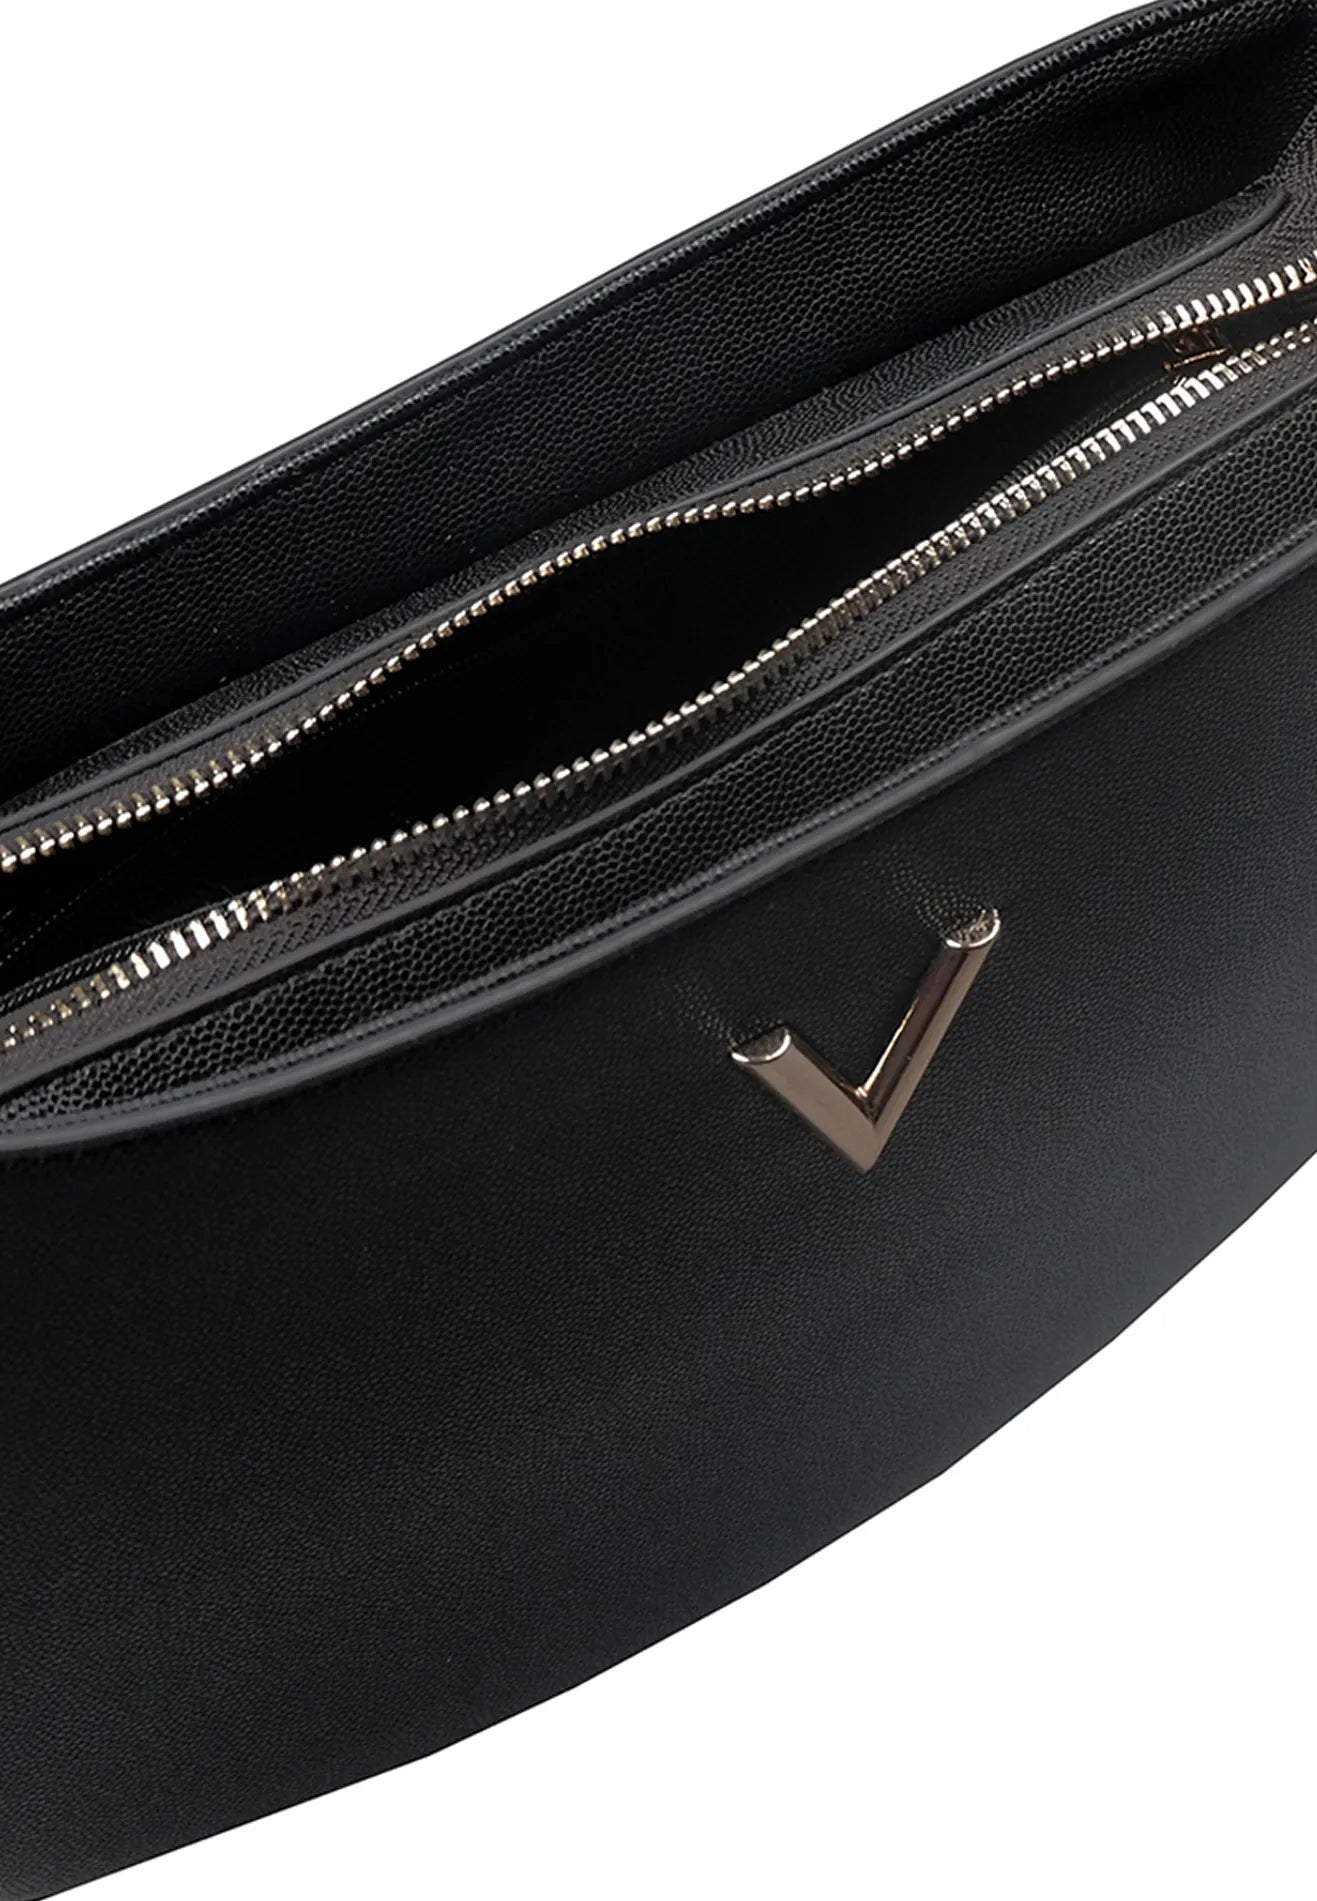 VOIR VERA Iconic 'V series' Top Handle Shoulder Bag